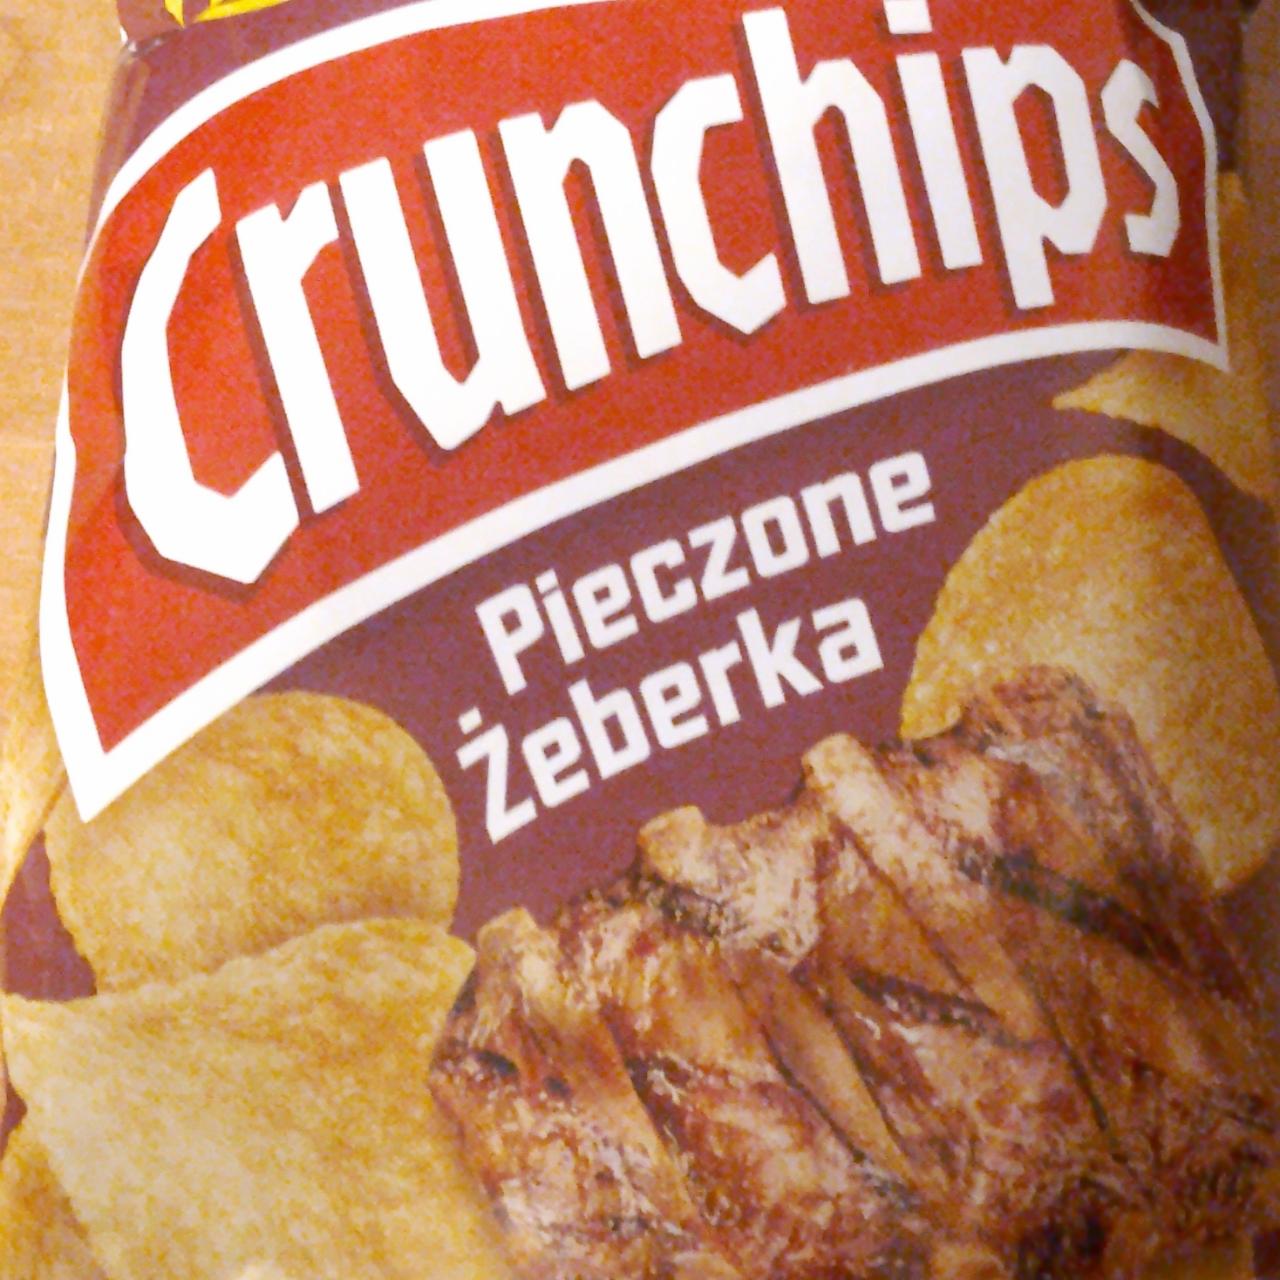 Zdjęcia - chipsy pieczone żeberka Crunchips